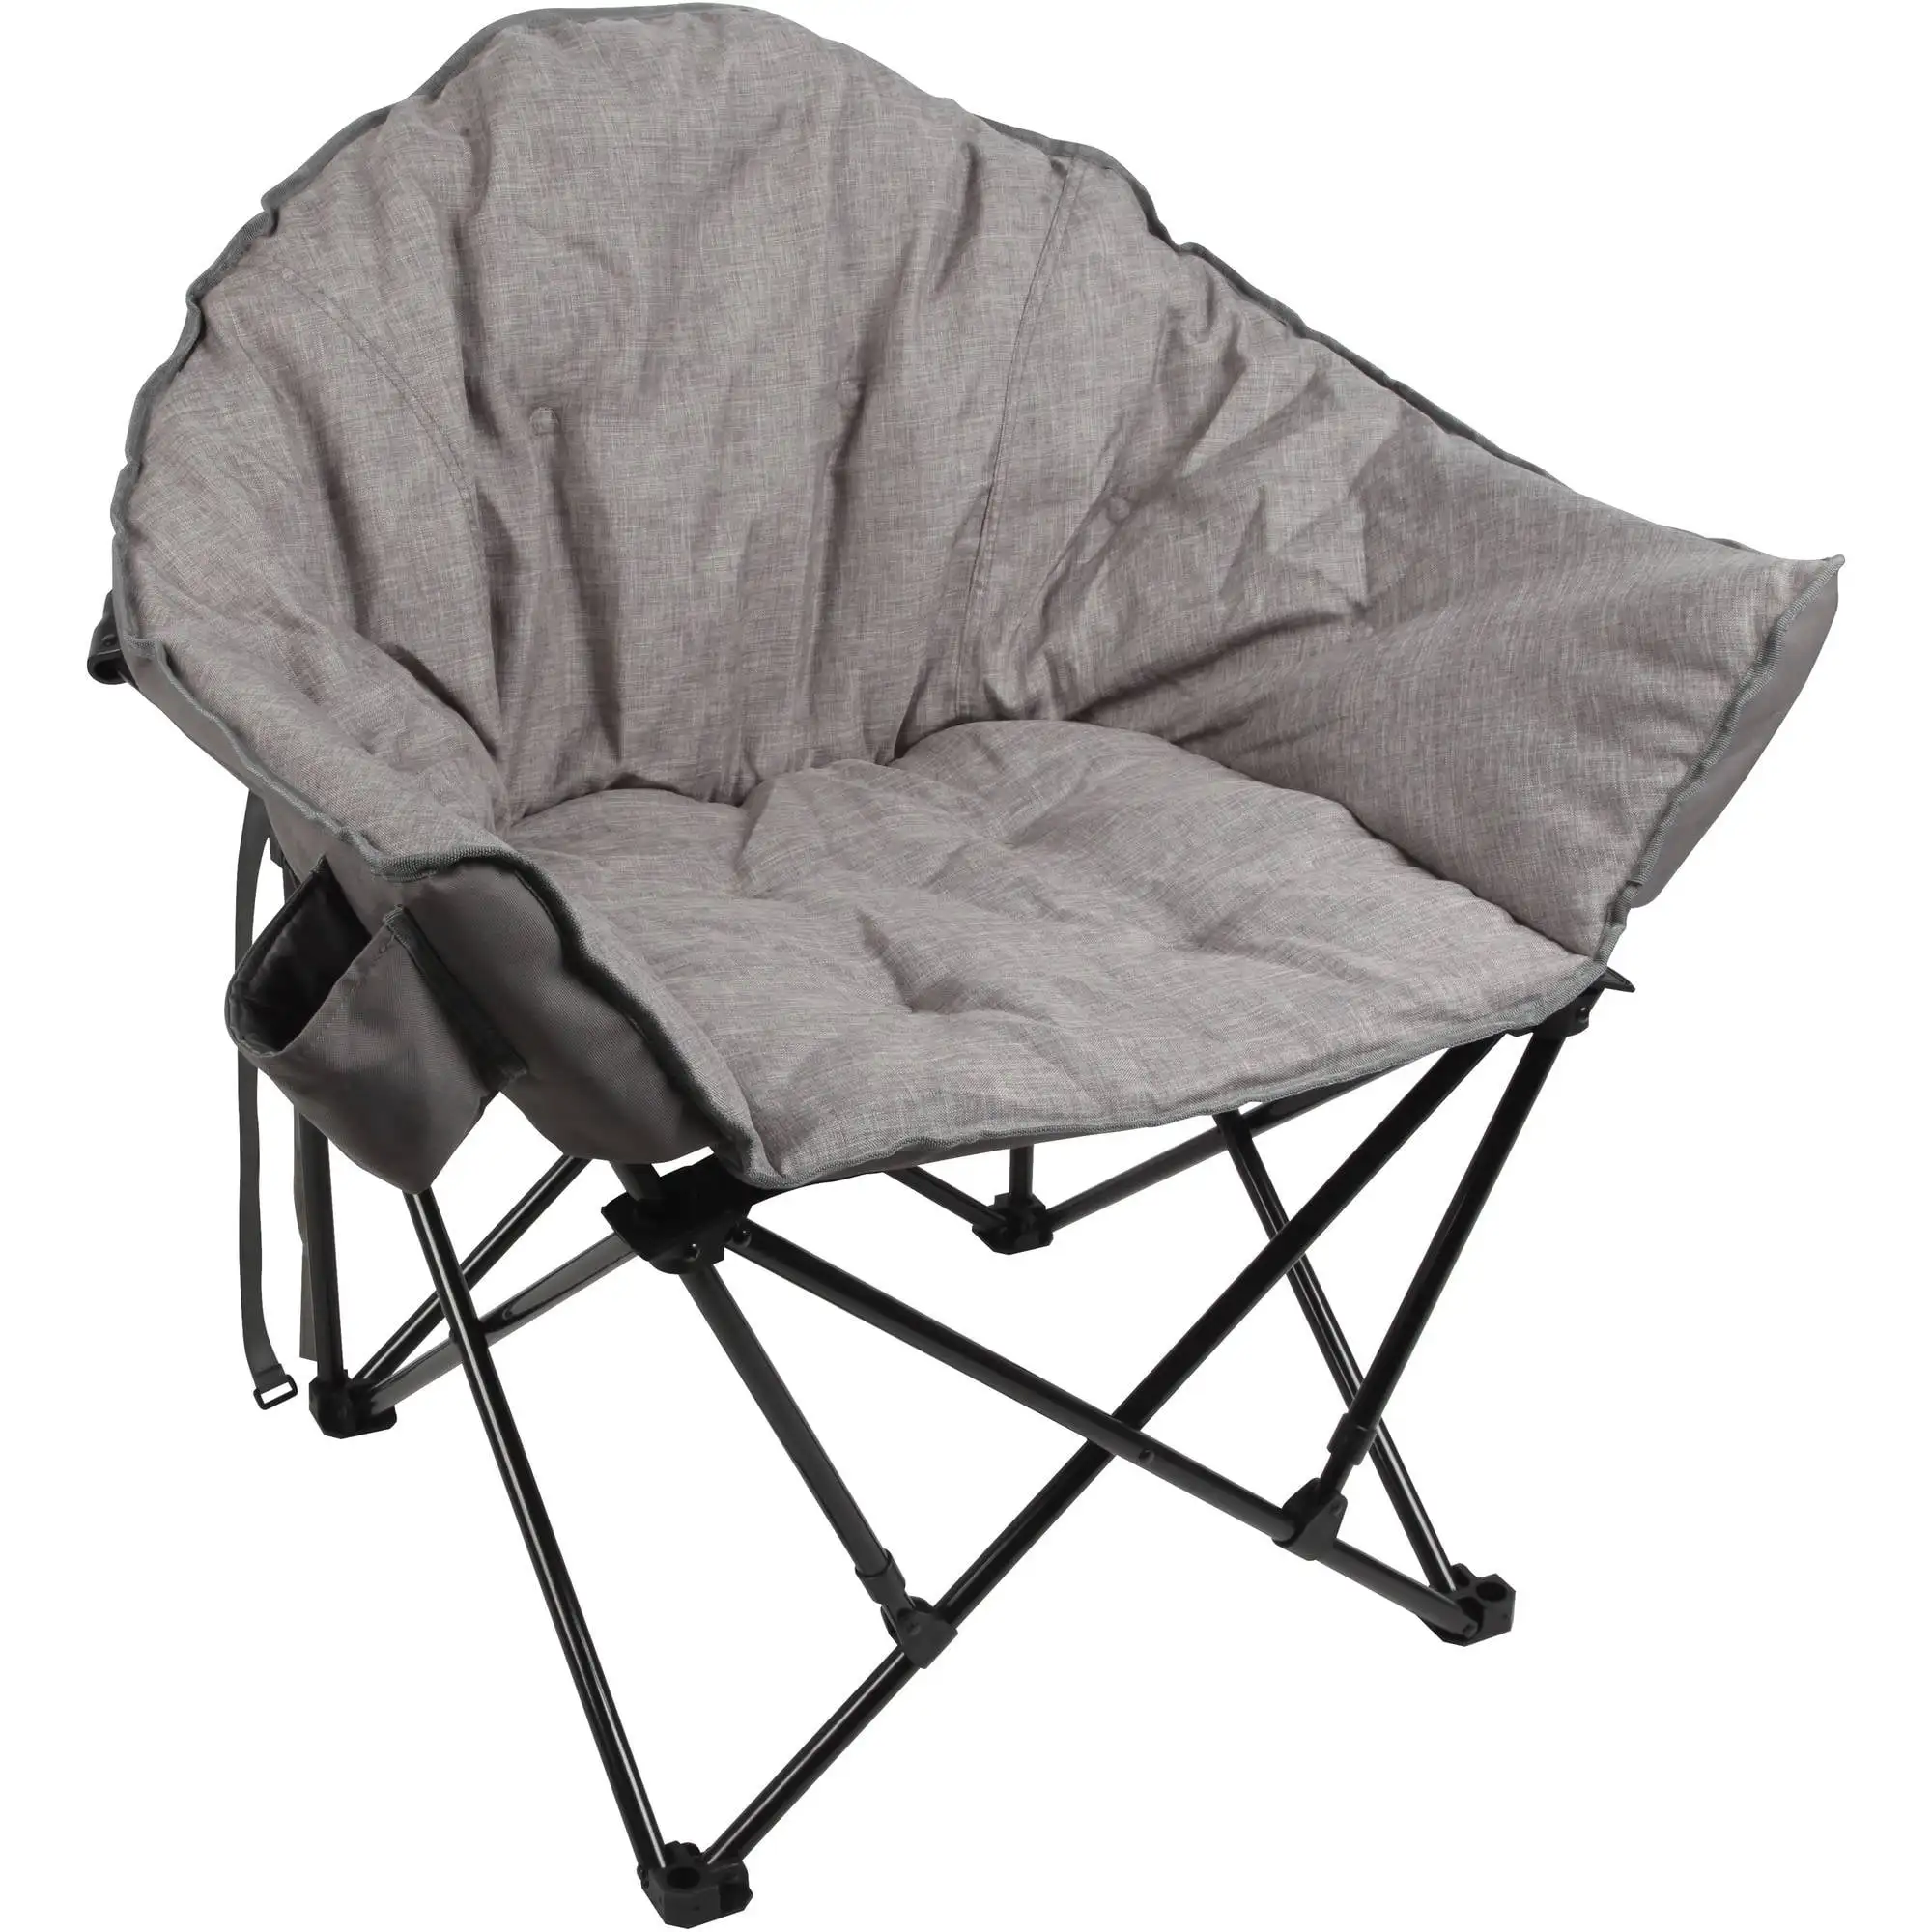 

Стул серый для кемпинга, уличная мебель, стул для походов и отдыха на природе, пляжные стулья, переносные складные стулья, поставки легких предметов для путешествий